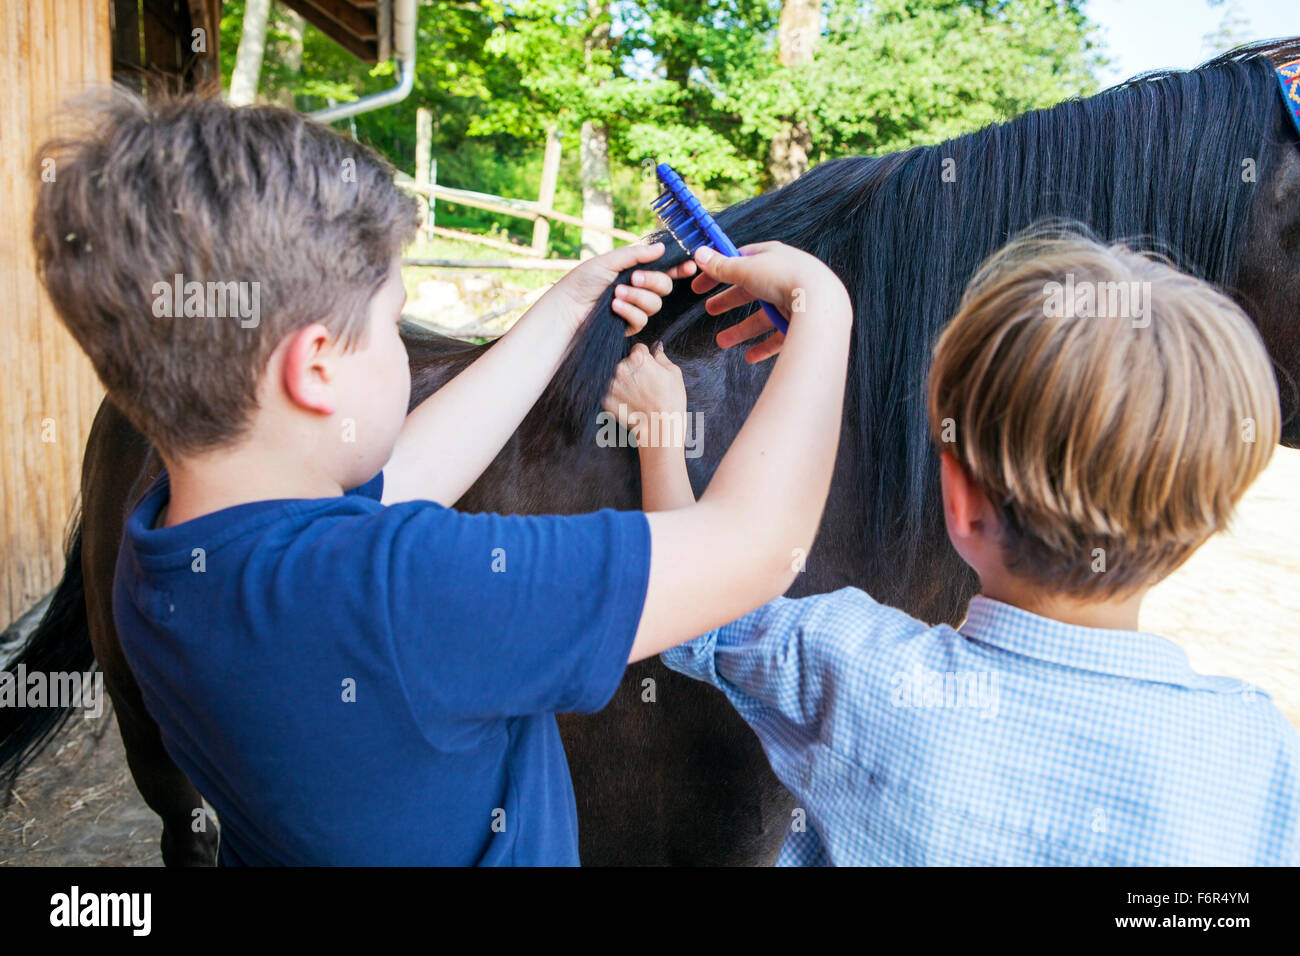 Two boys brushing together mane of horse Stock Photo